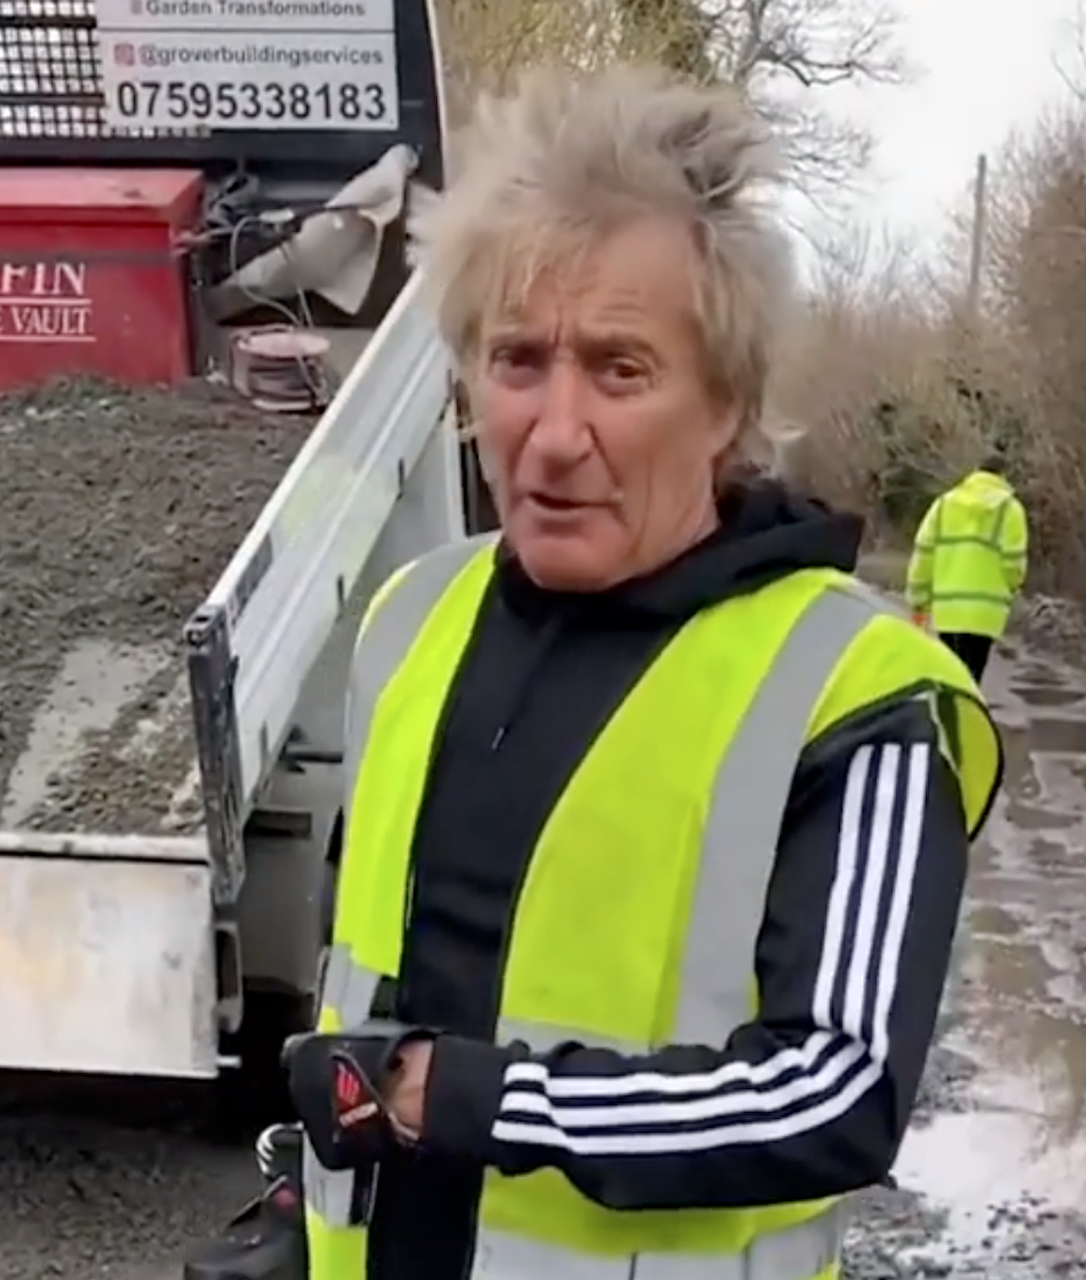 Rod stewart fixing a pothole